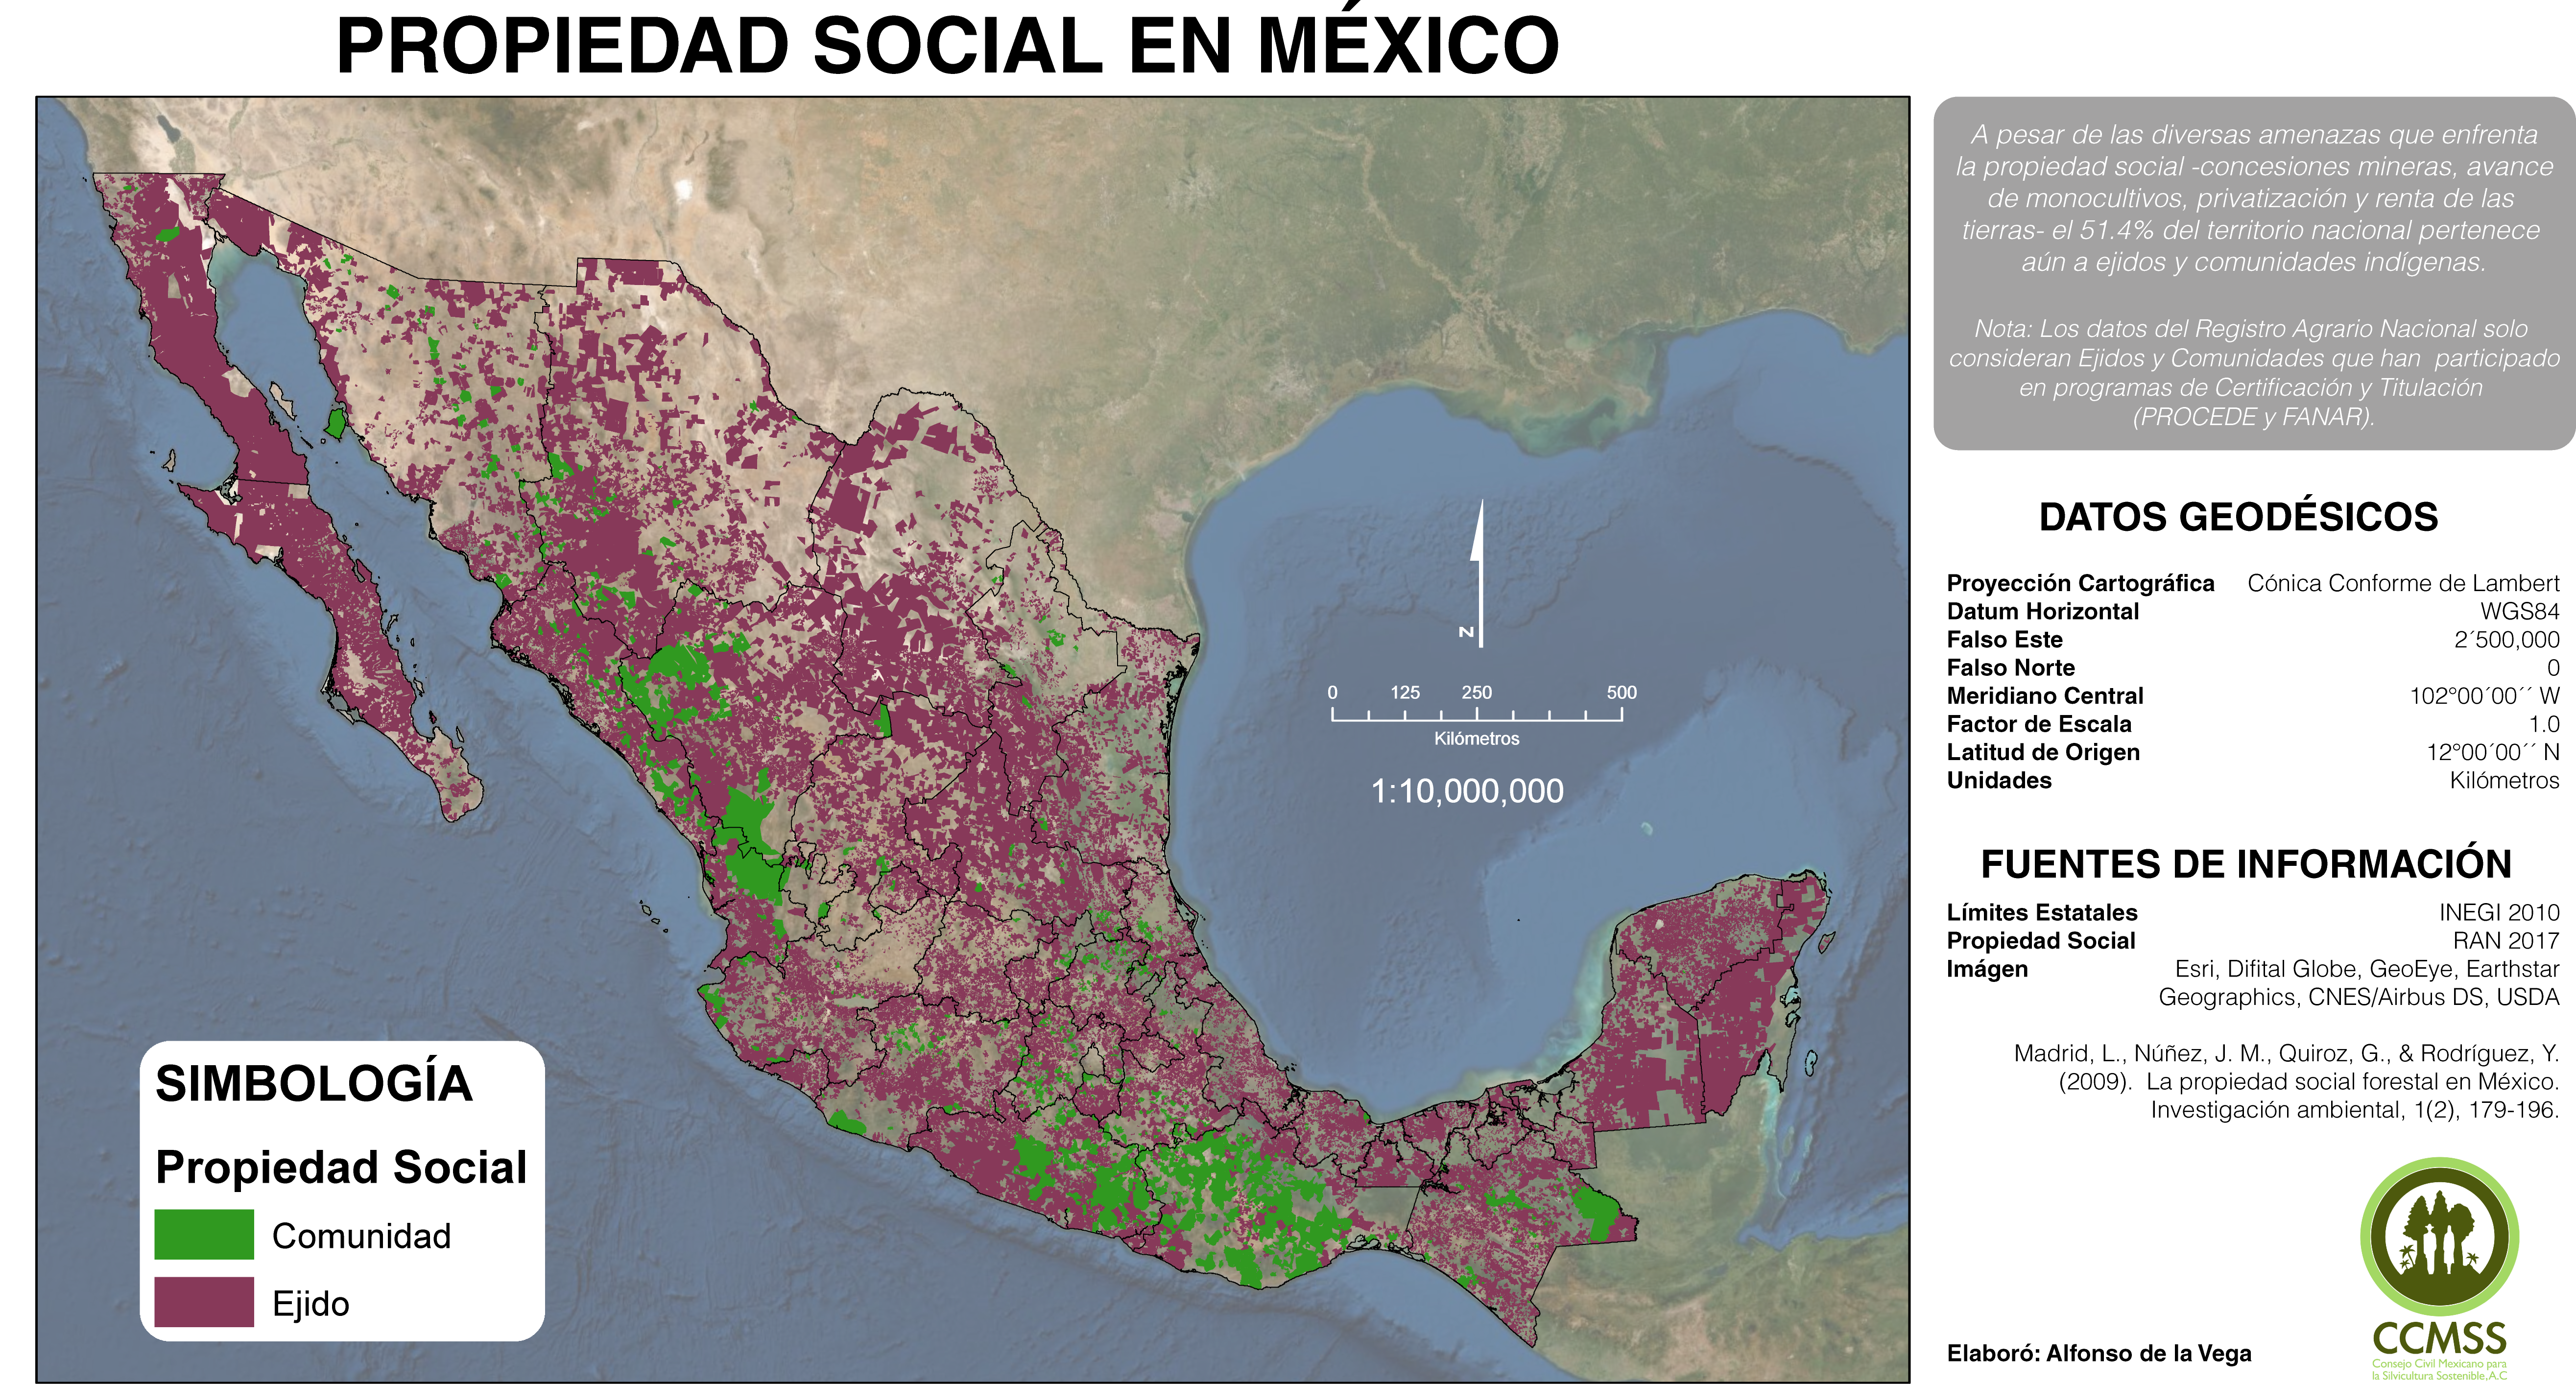 La propiedad social en México